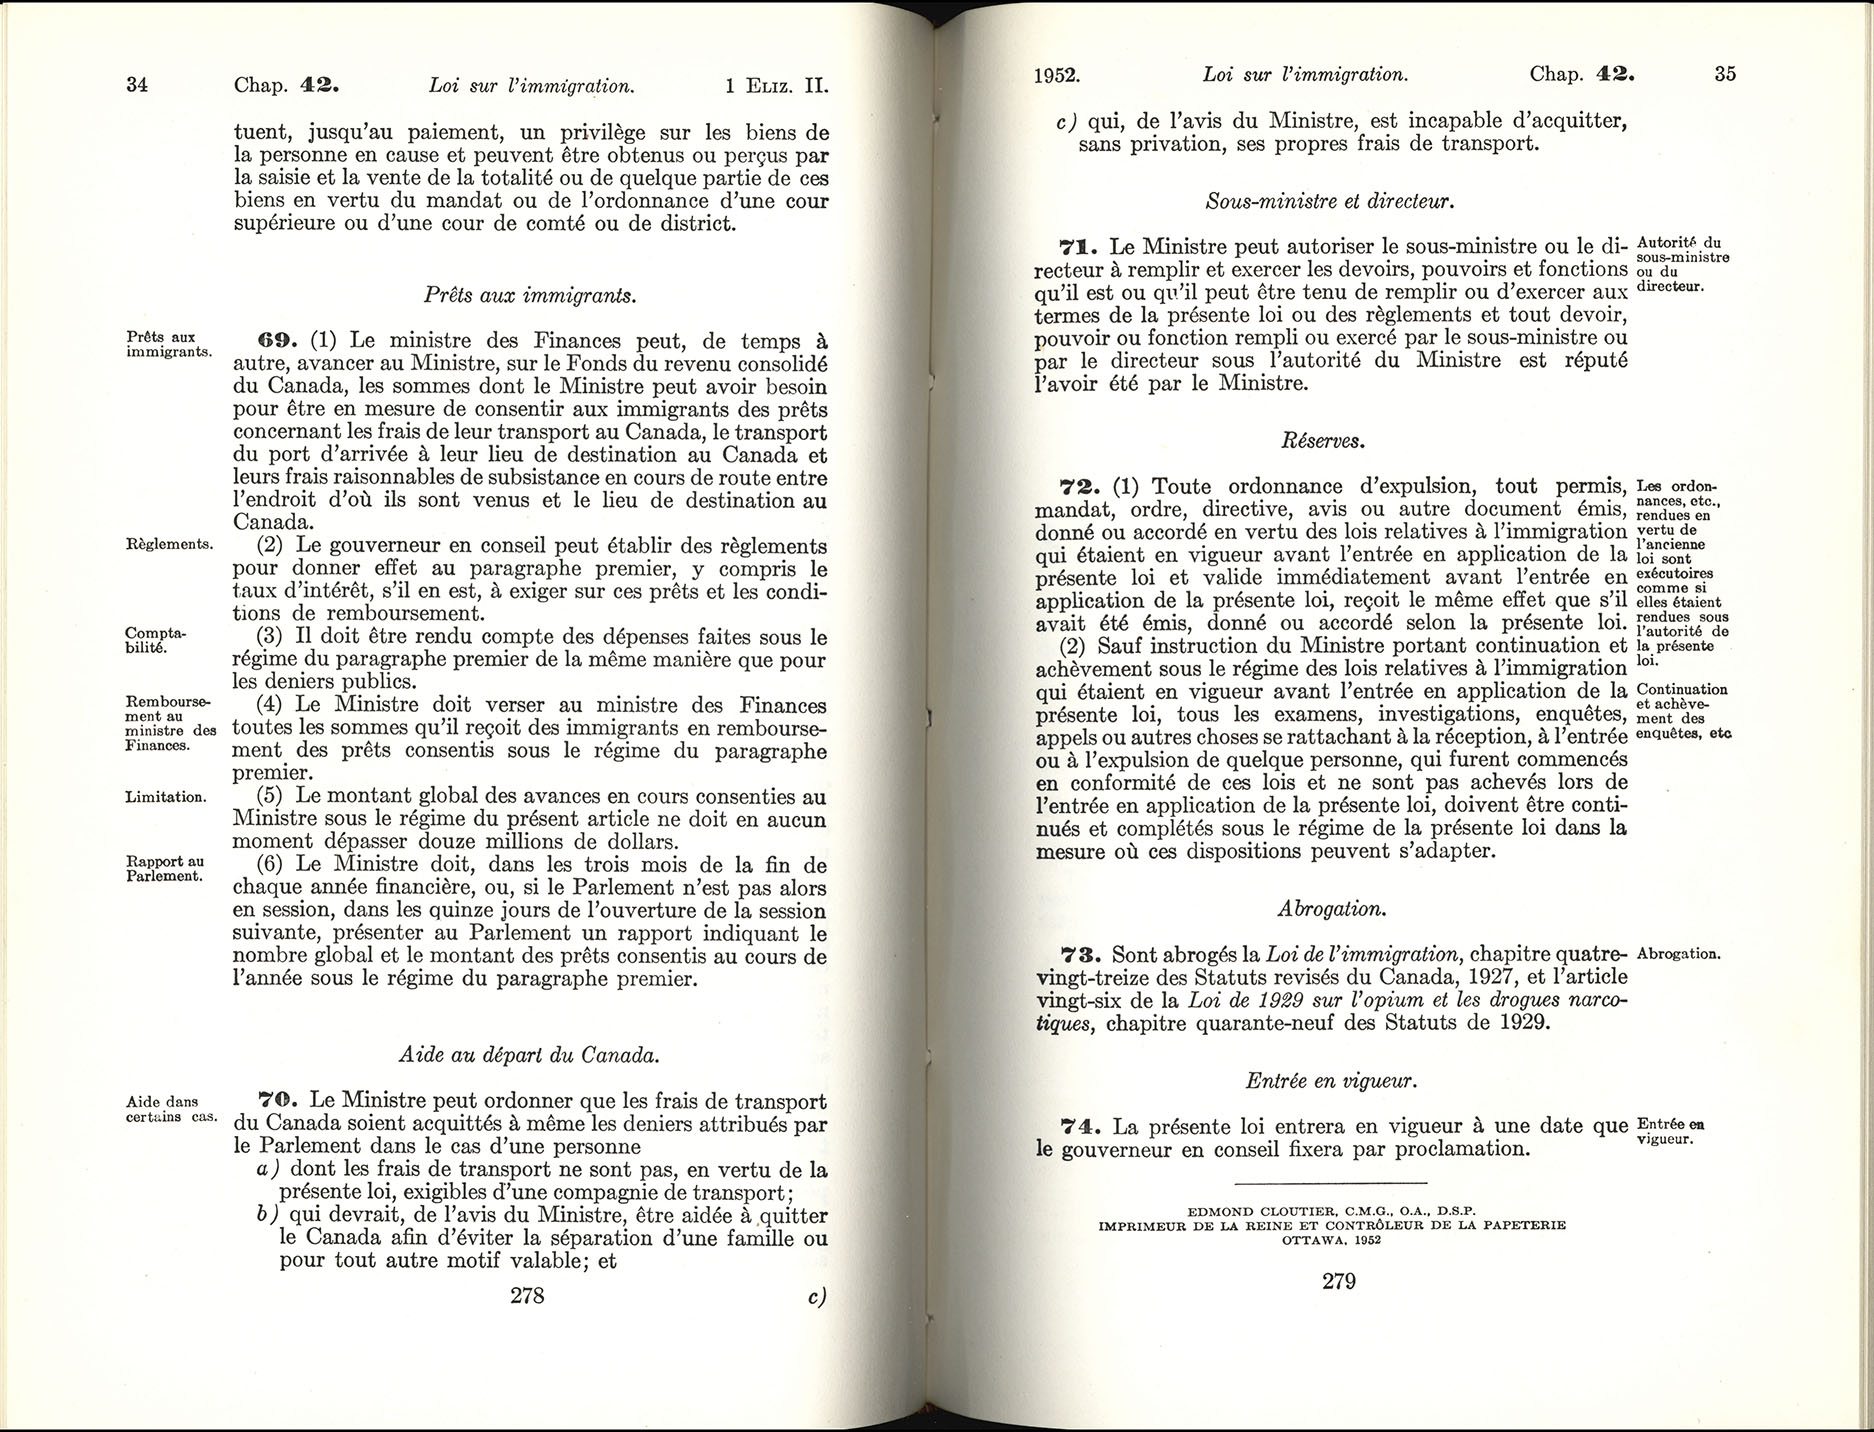 Chap 42 Page 278, 279 Loi sur l’immigration, 1952